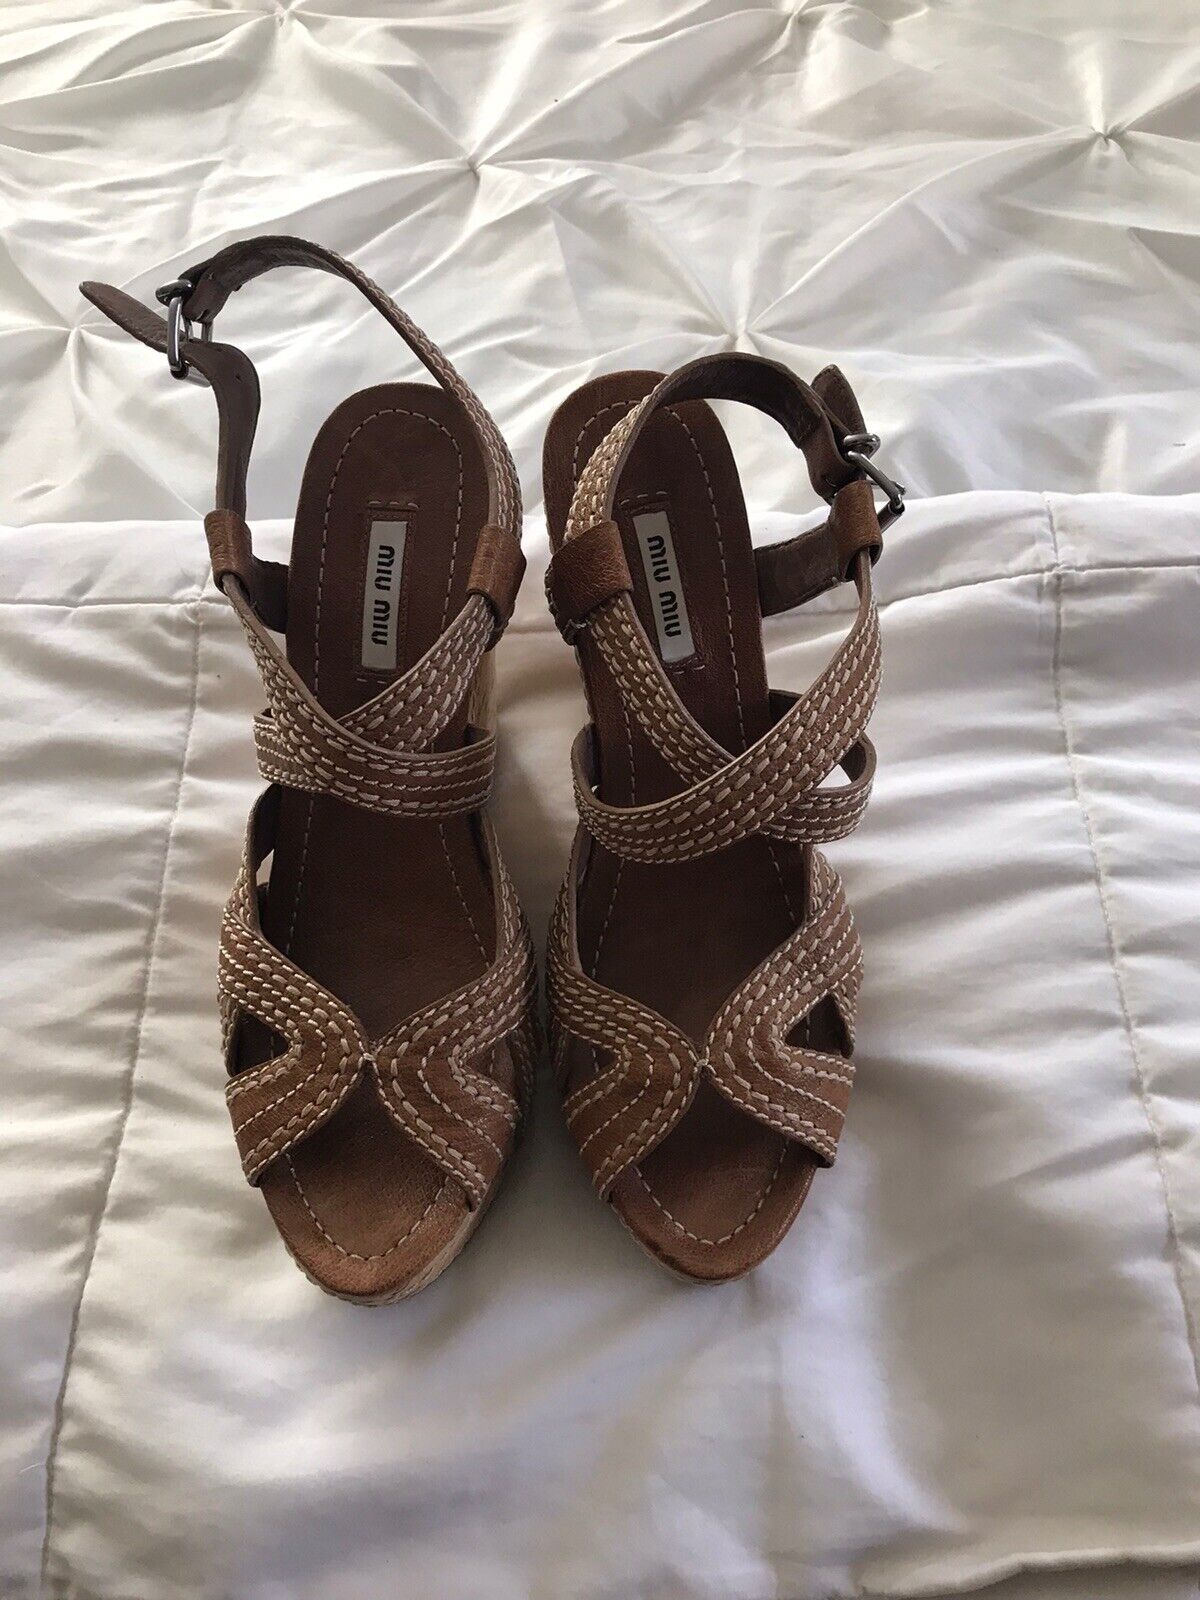 Miu Miu Cork Wedge Sandals Size 39 / 8.5